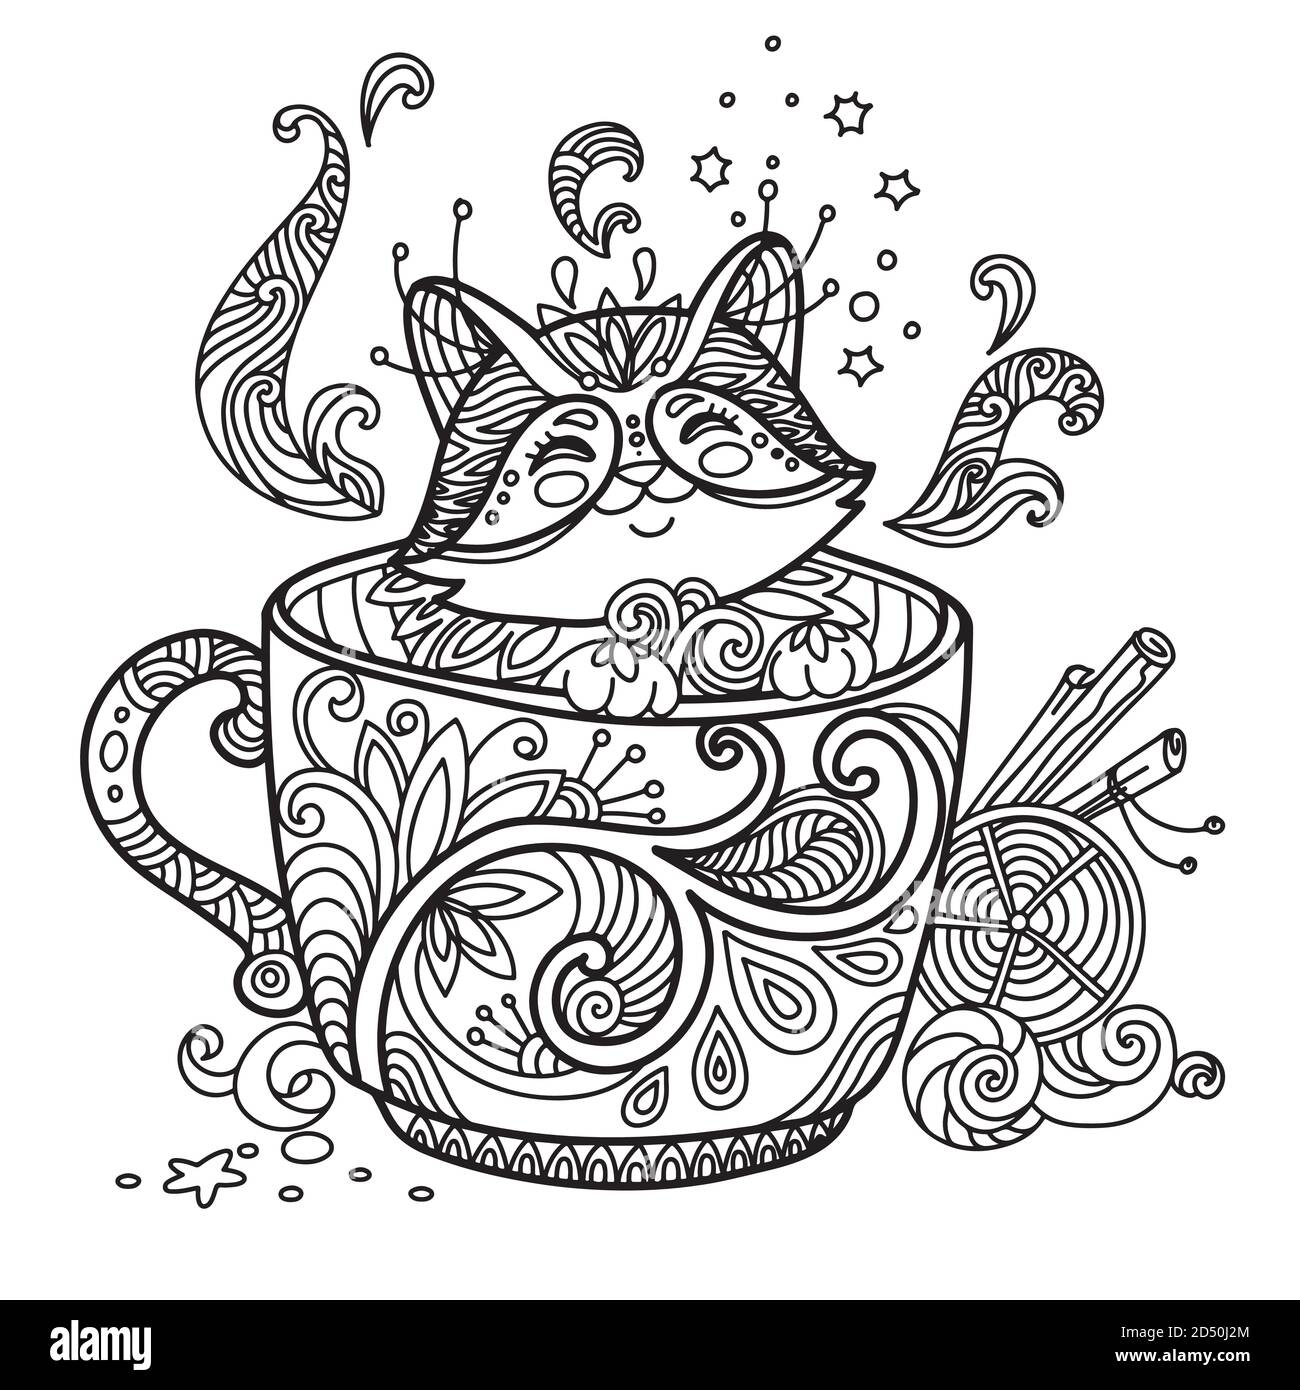 Kitten in a mug #3